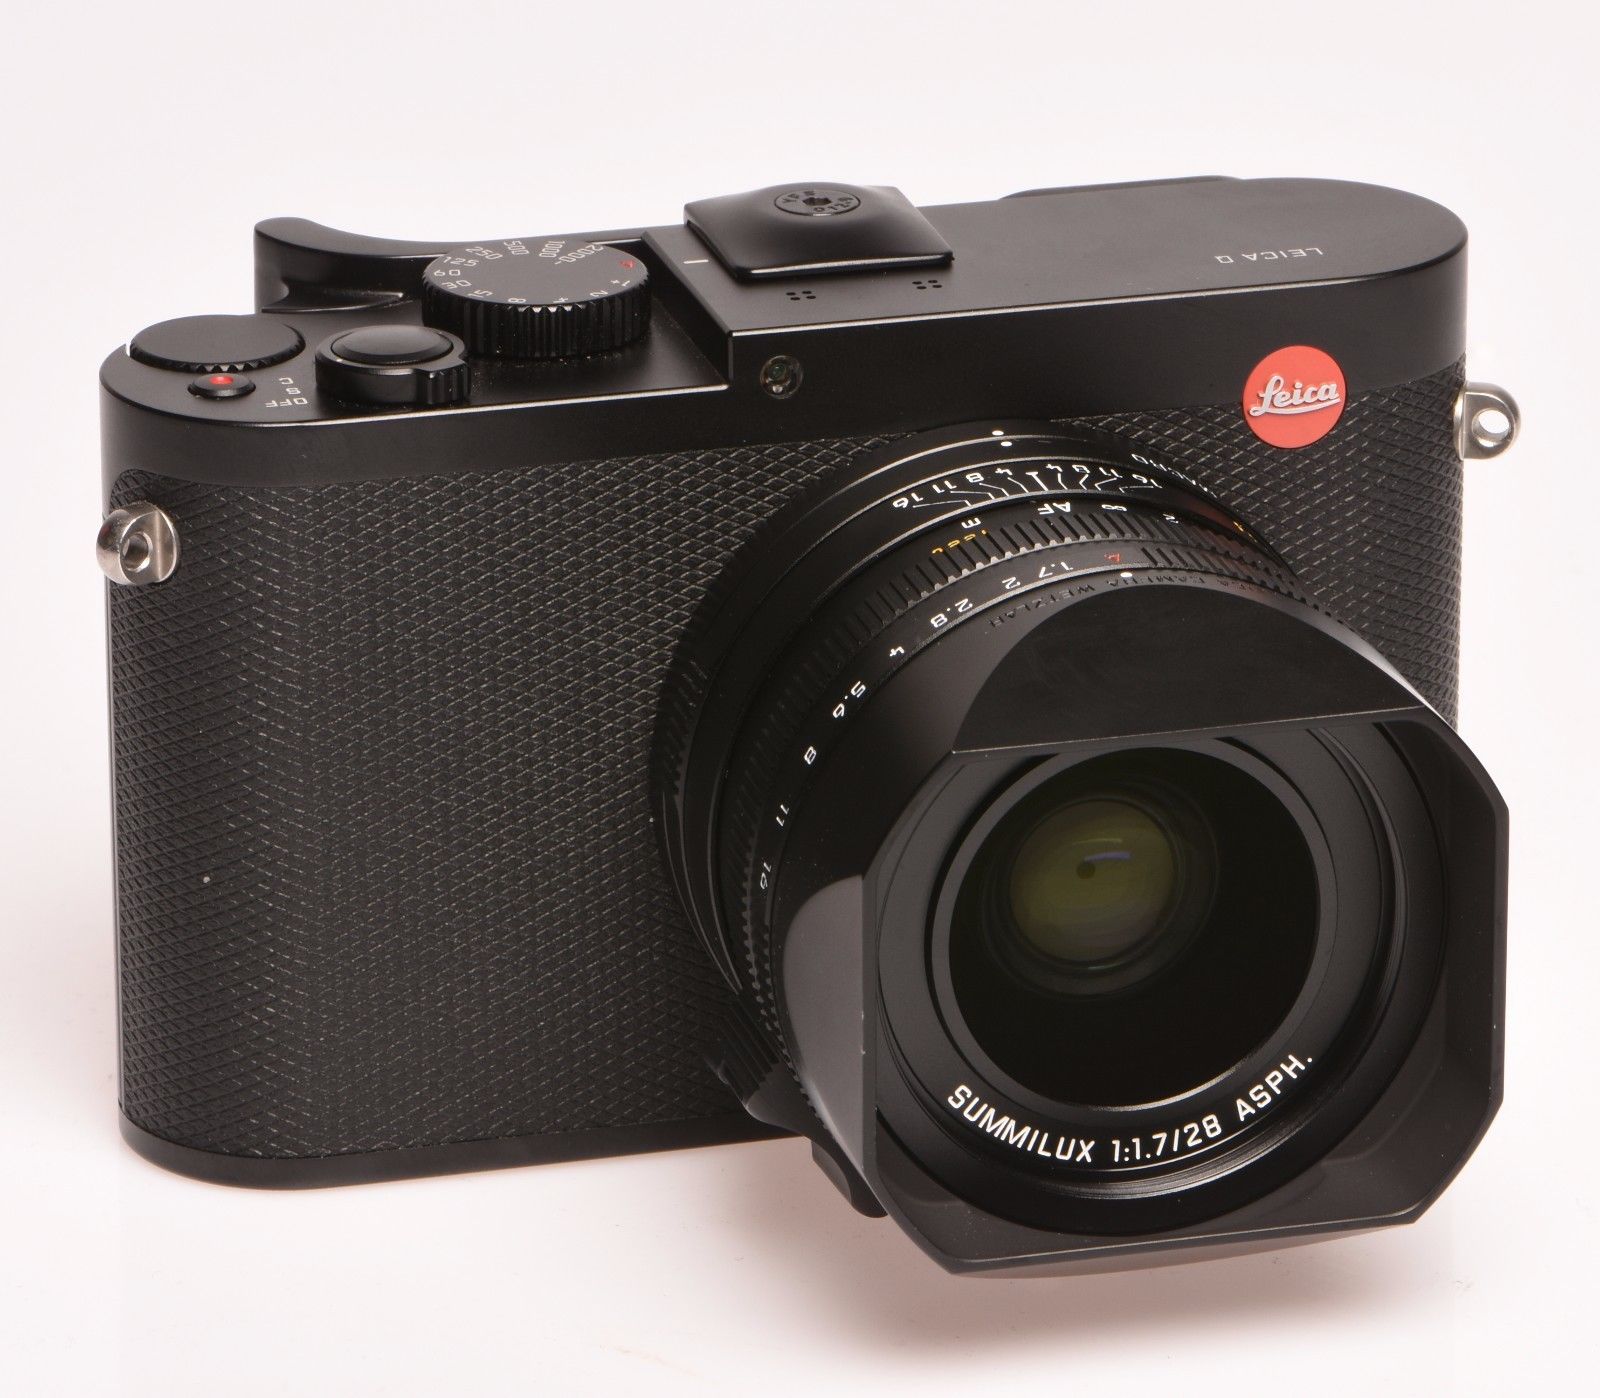 Leica Q Typ 116 24.2MP Digitalkamera - Schwarz (Gebraucht) (Top Zustand)